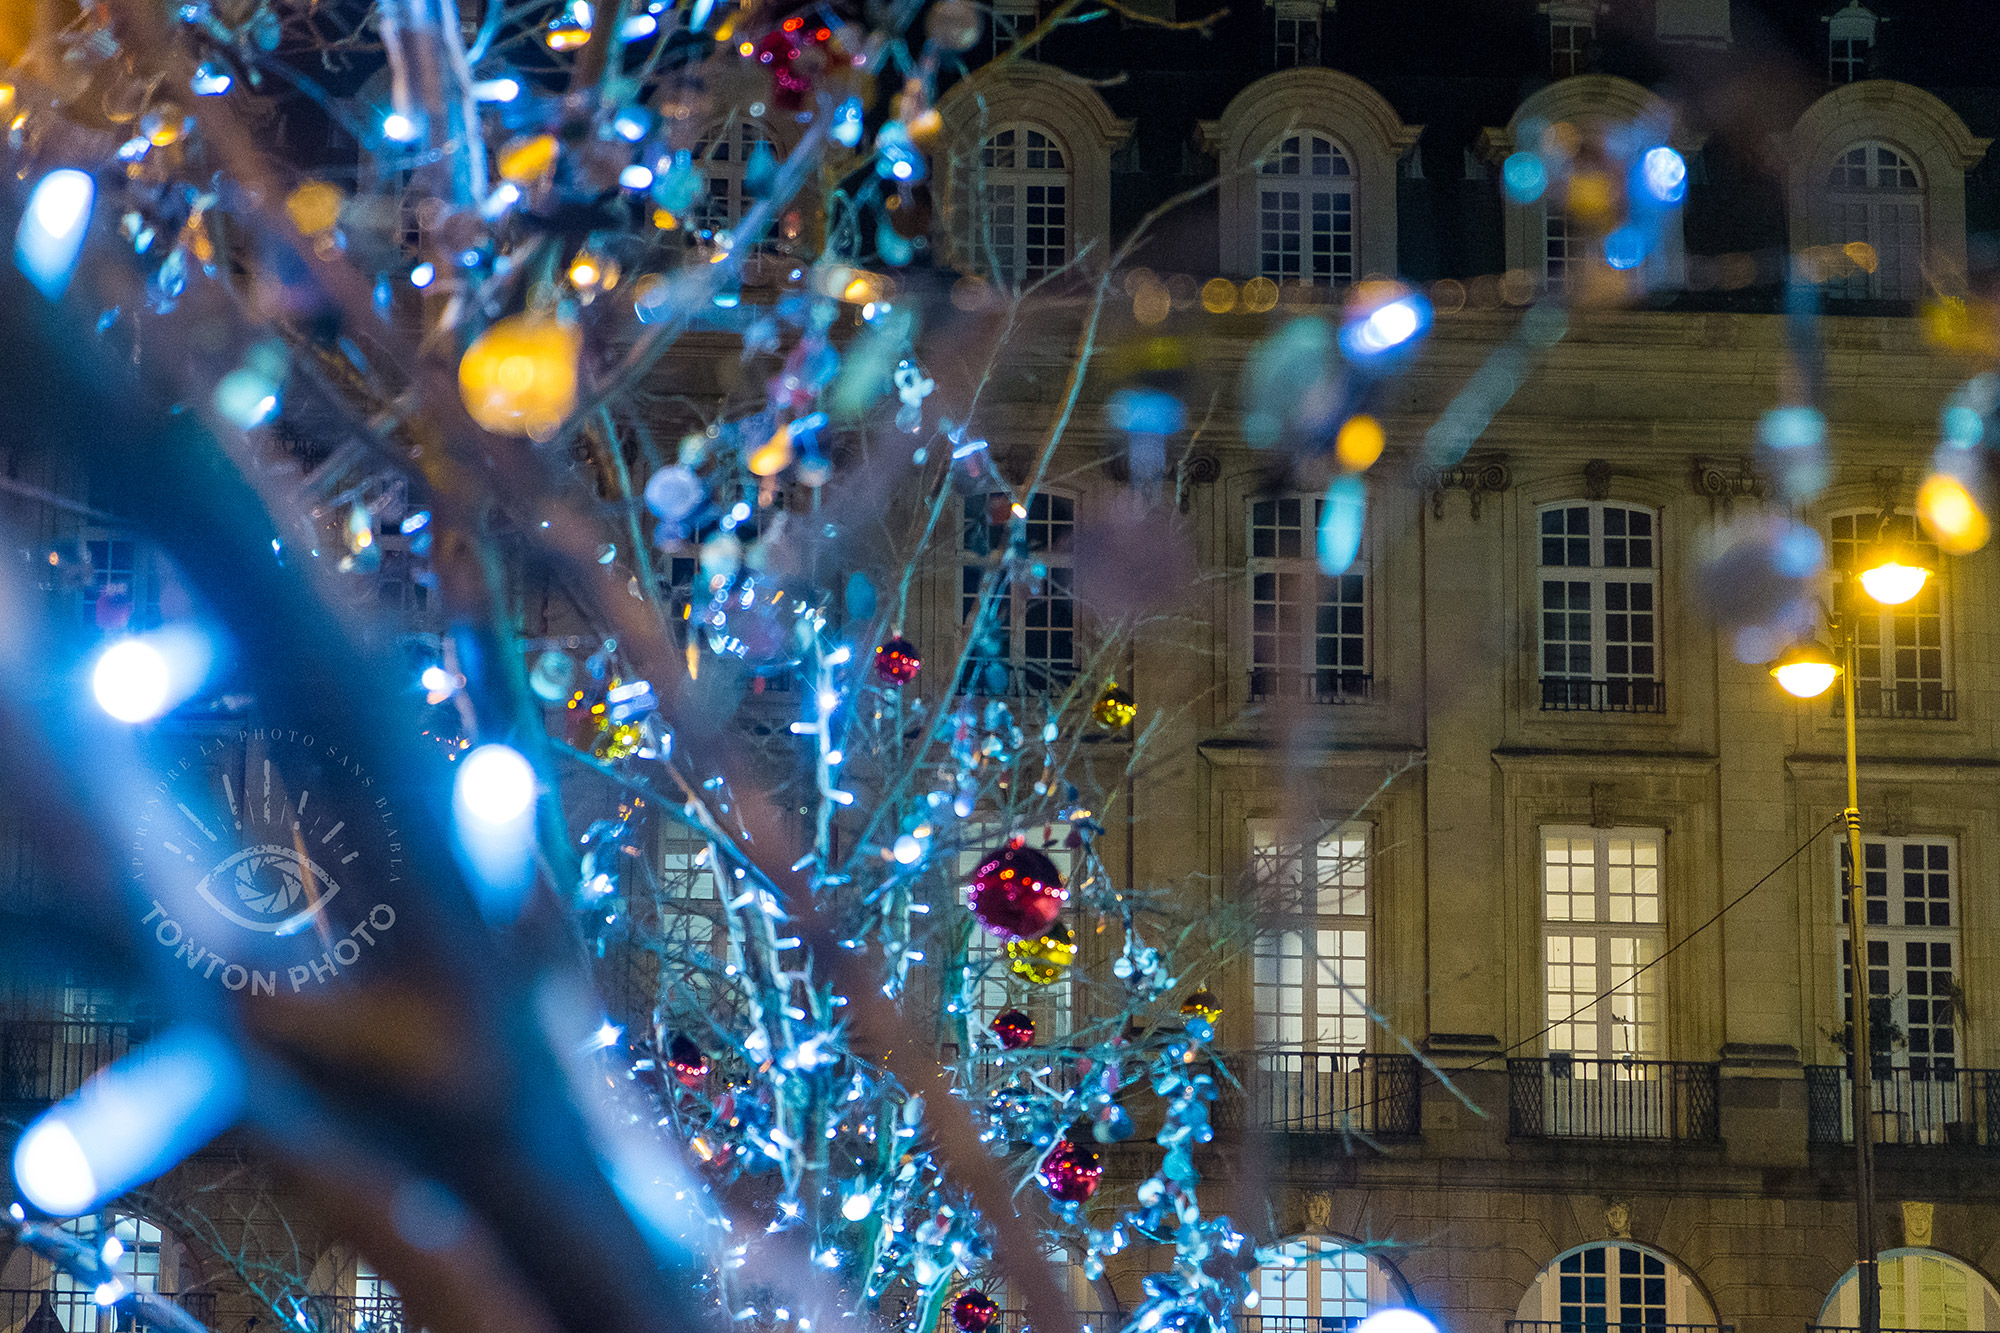 C'est beau une ville la nuit | Comment photographier pendant Noël et les fêtes de fin d'année ? © Clément Racineux / Tonton Photo